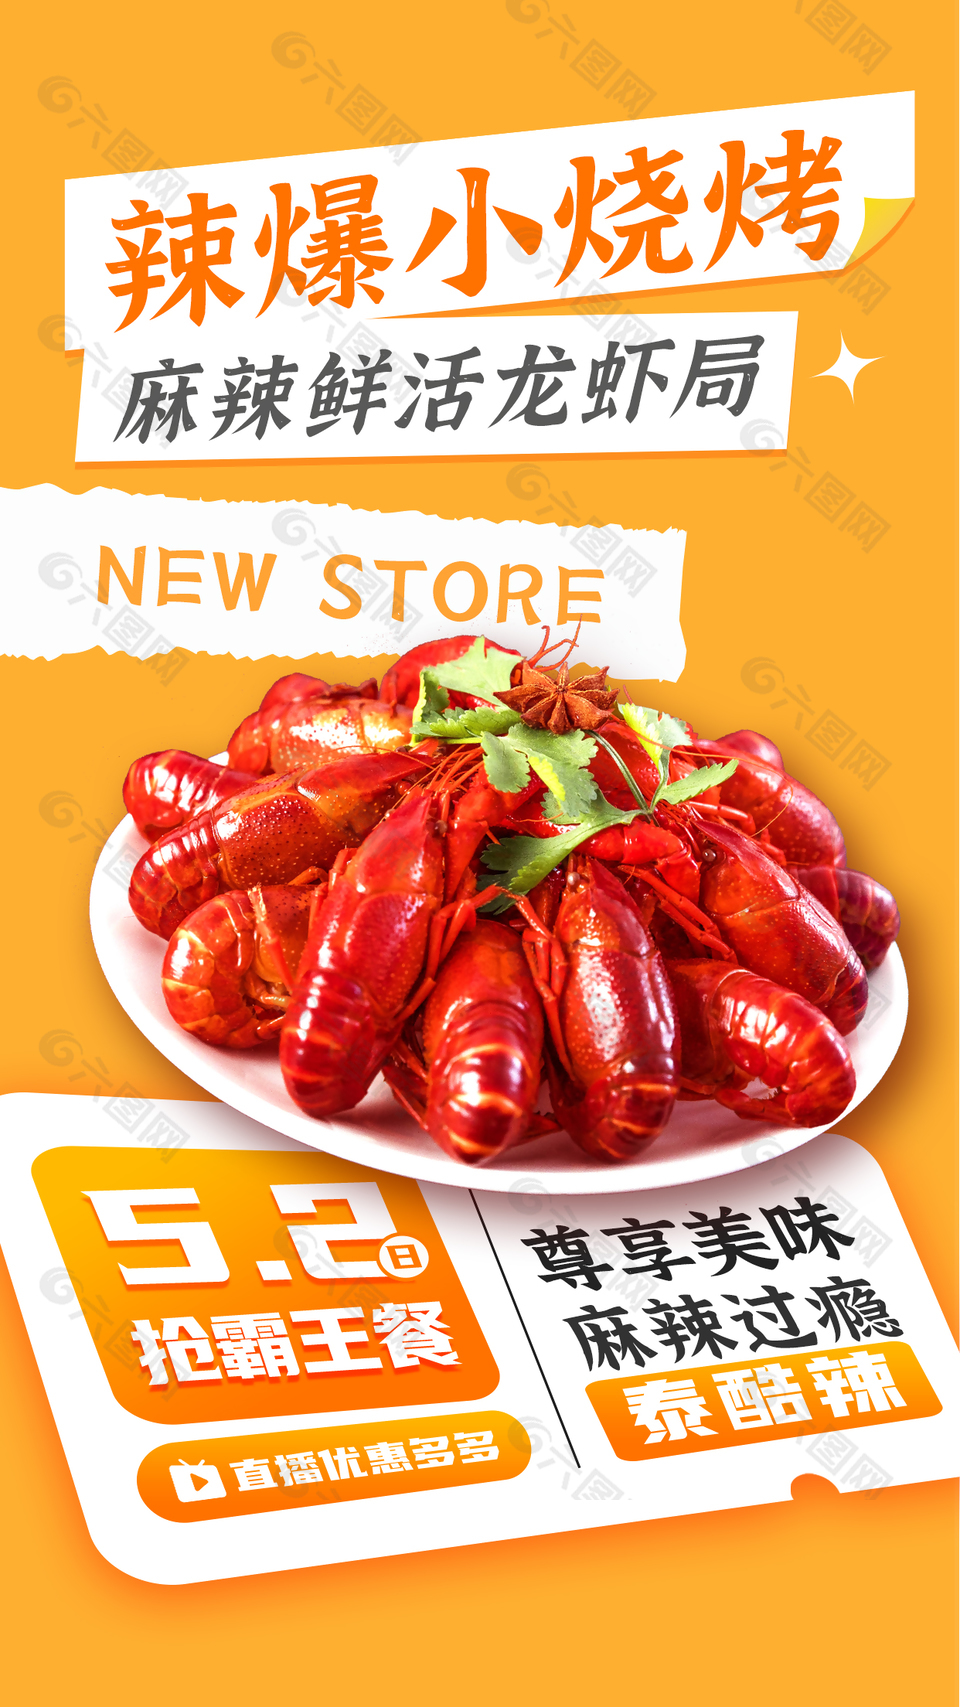 辣爆小烧烤龙虾局直播预告活动营销海报设计